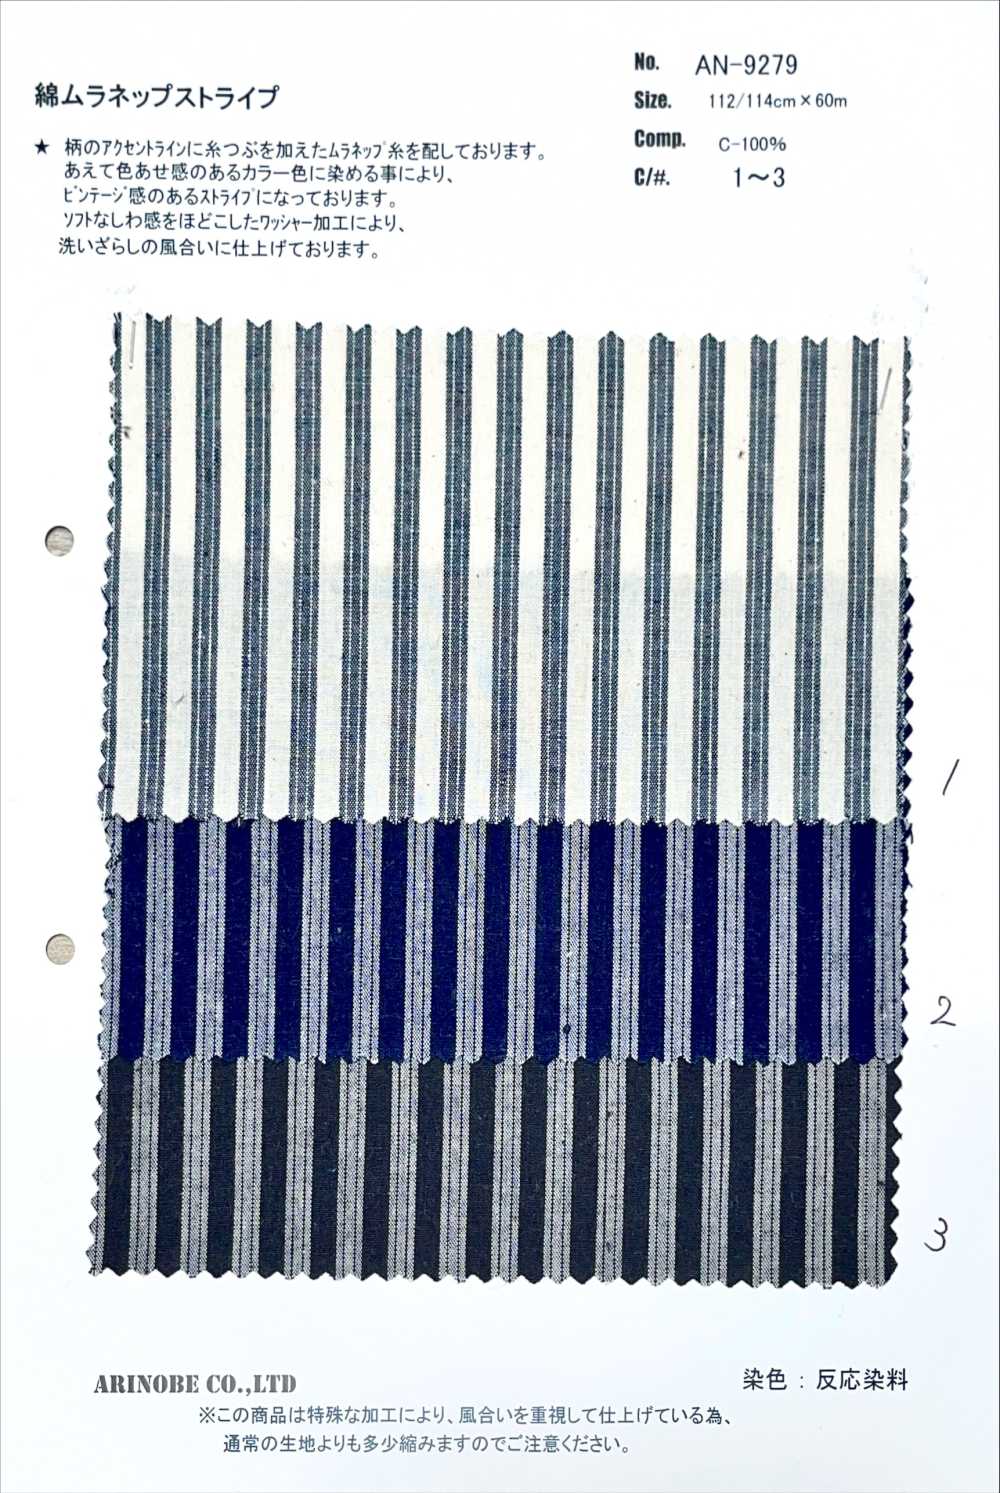 AN-9279 Listra De Algodão Muranep[Têxtil / Tecido] ARINOBE CO., LTD.